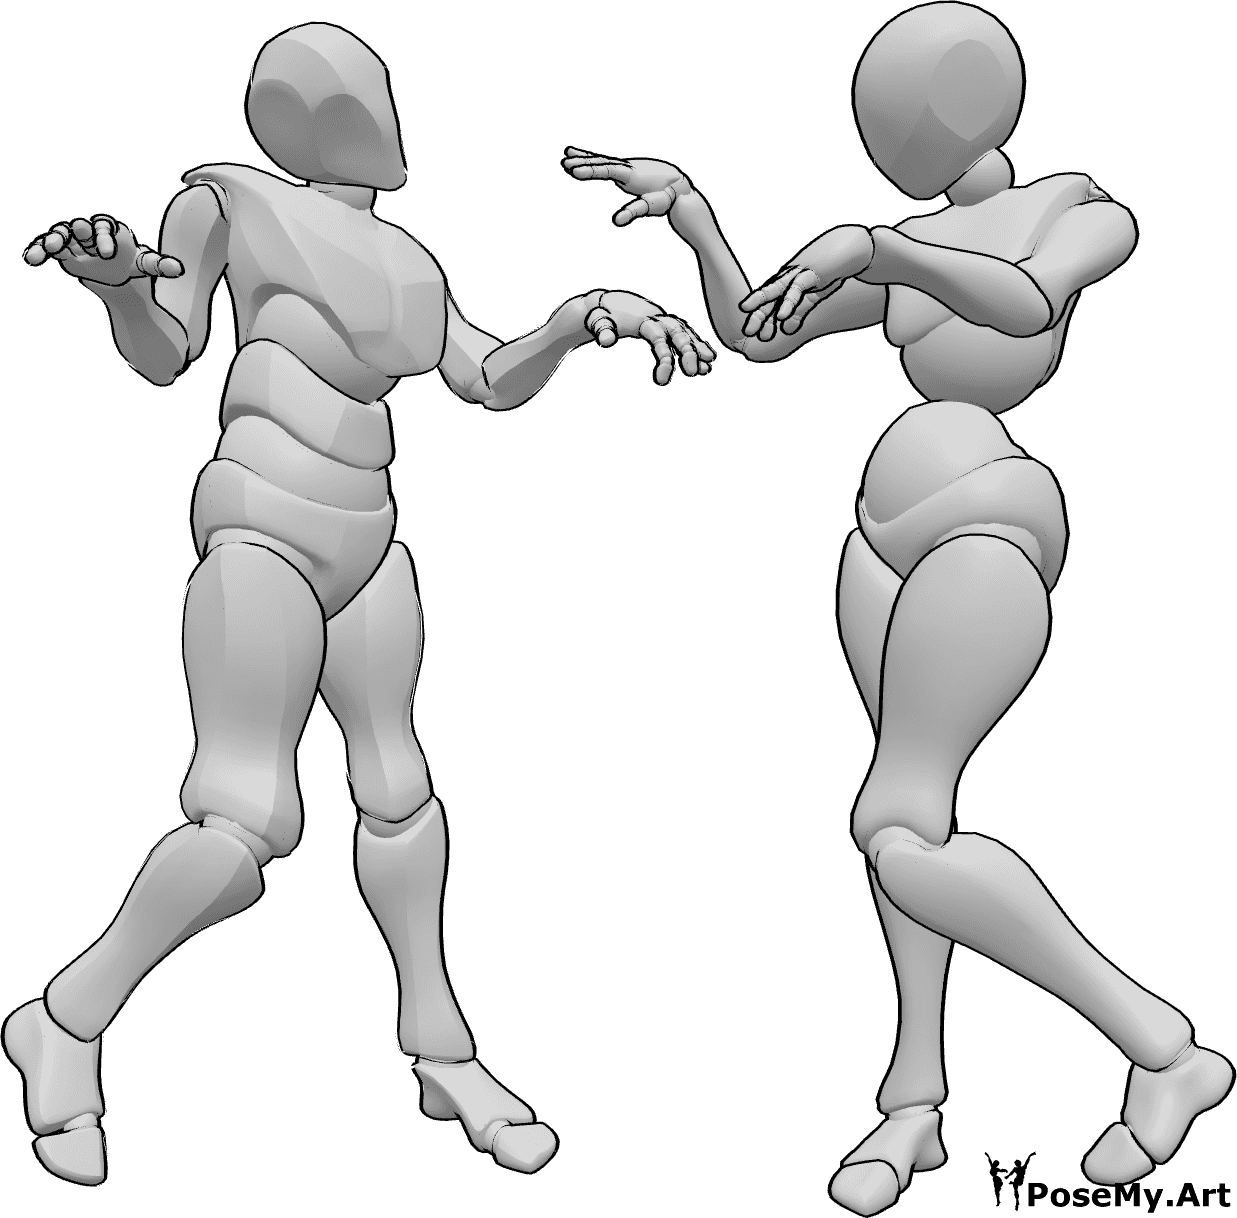 Referencia de poses- Zombie pareja bailando pose - Espeluznante pareja de zombies femenina y masculina bailando juntos posan